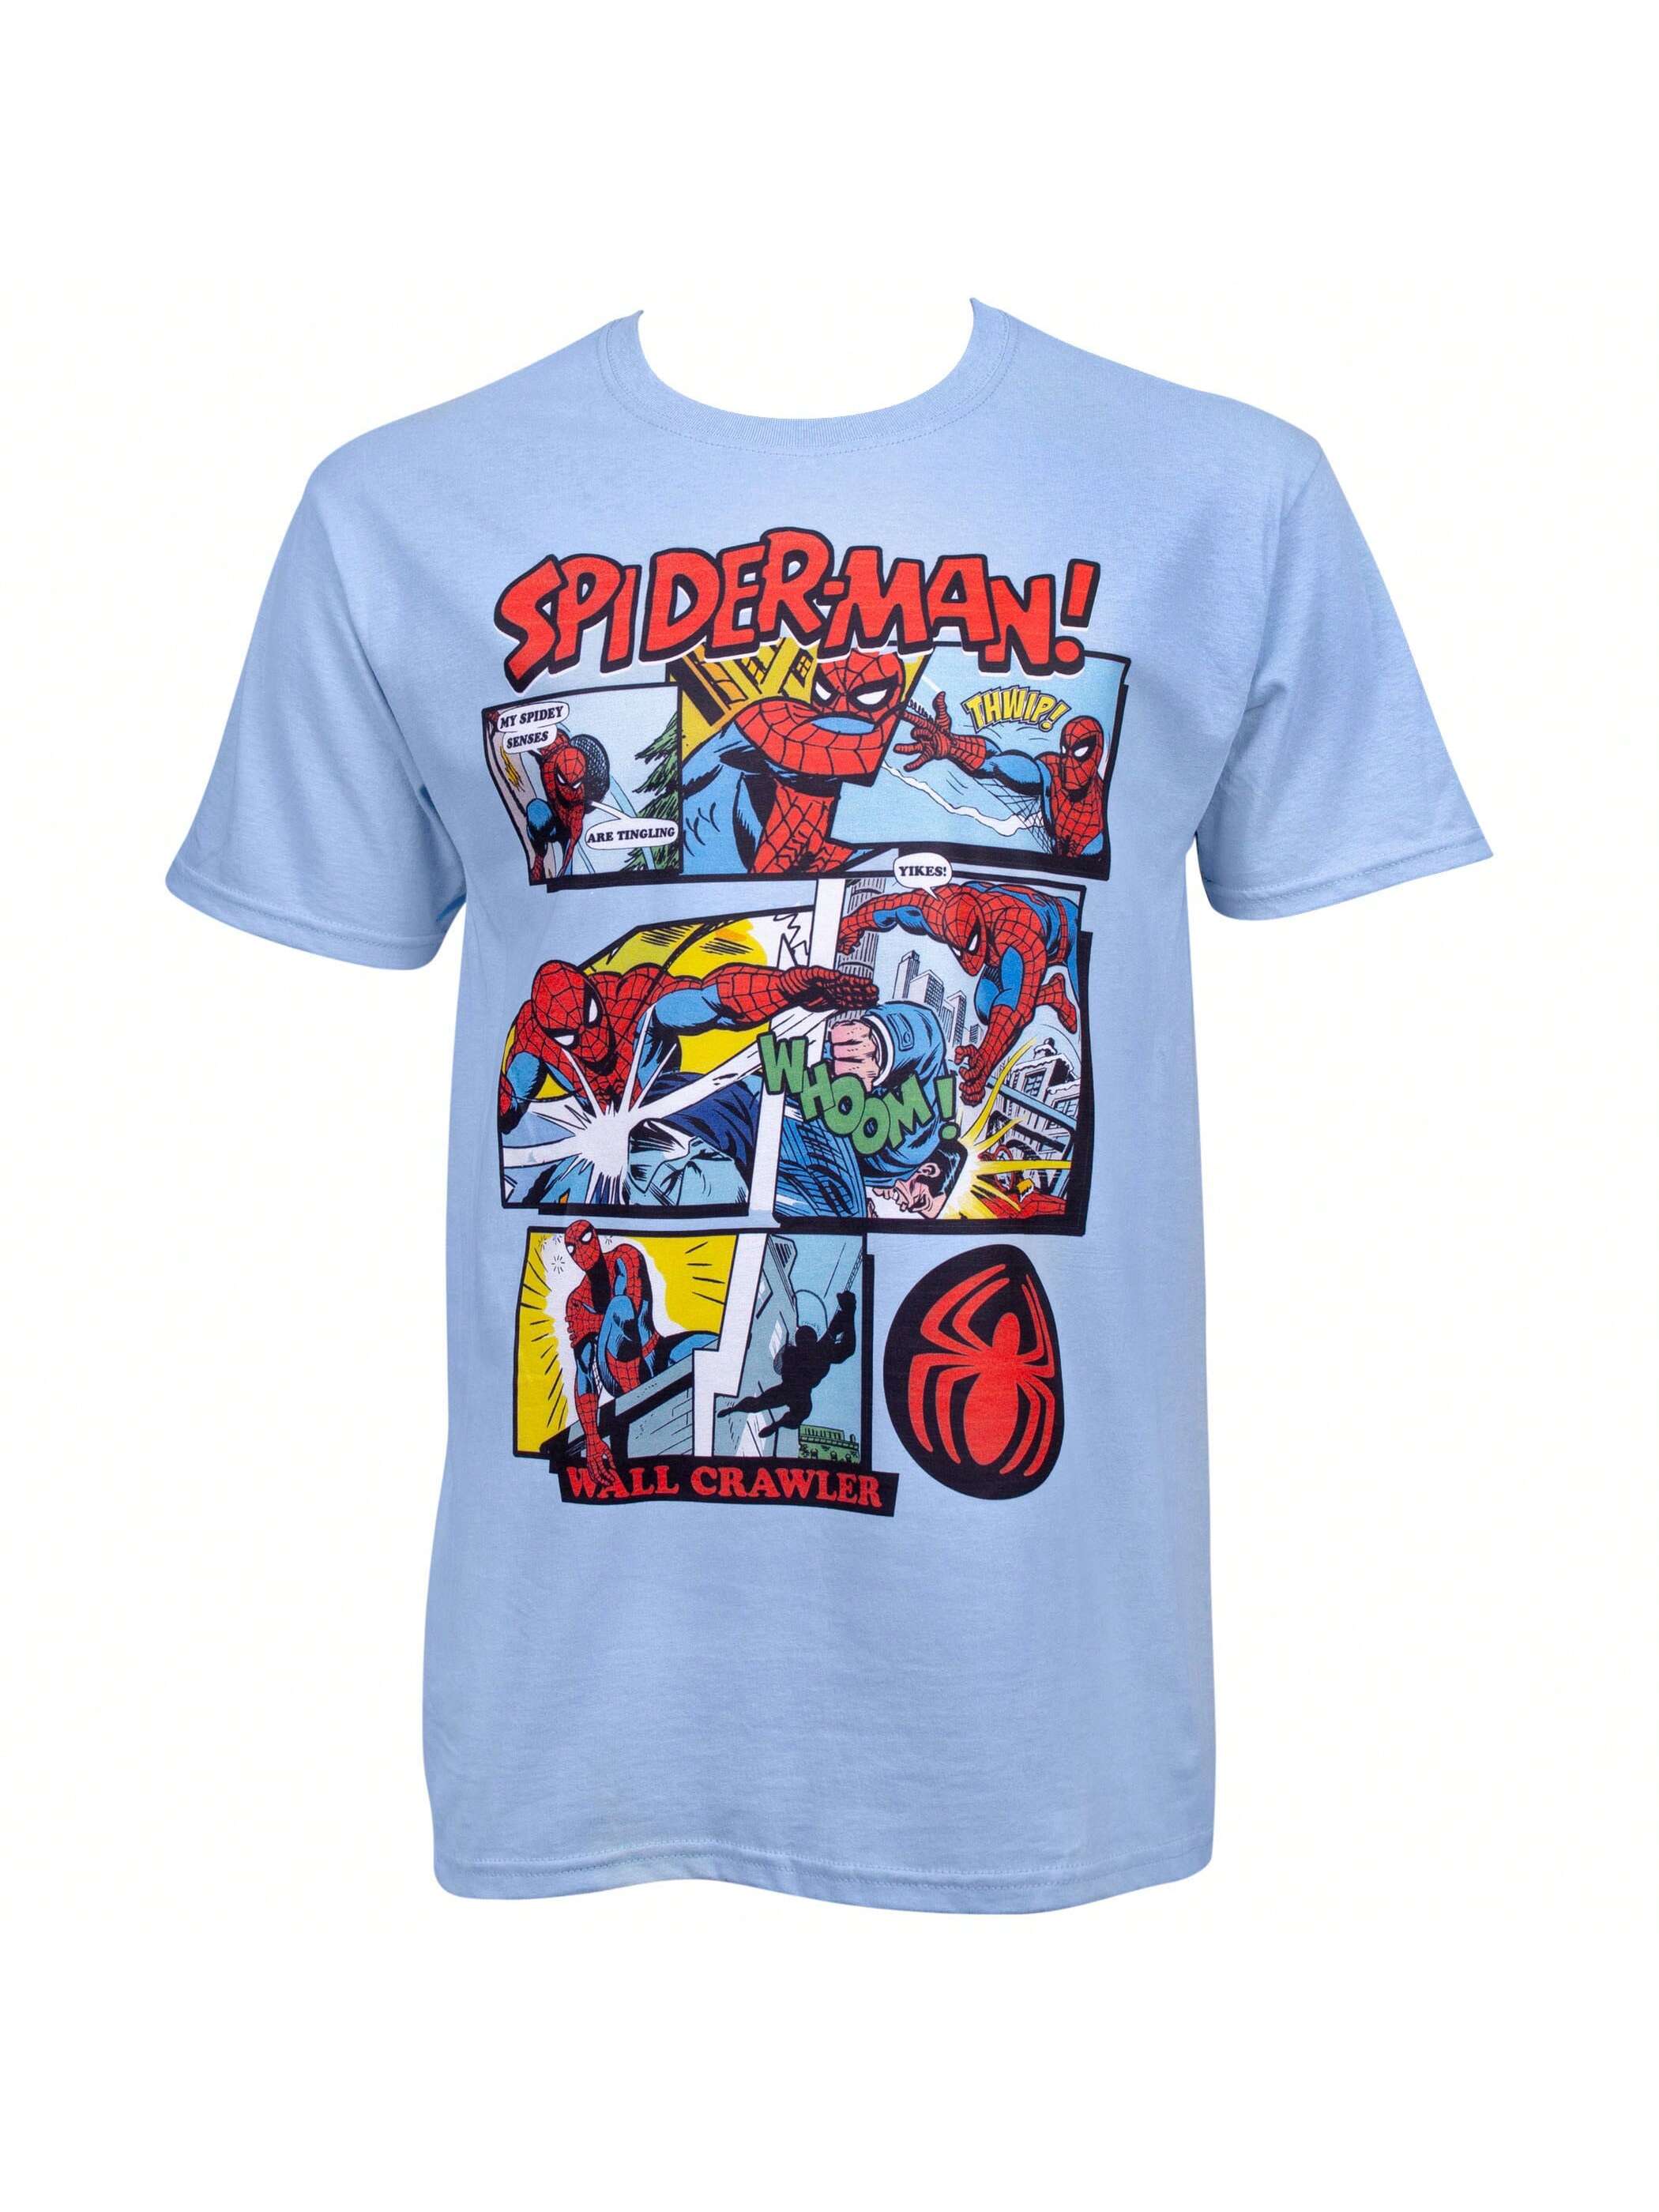 набор стикеров marvel spider man Синяя футболка с панелями комиксов Marvel Spider-Man, синий